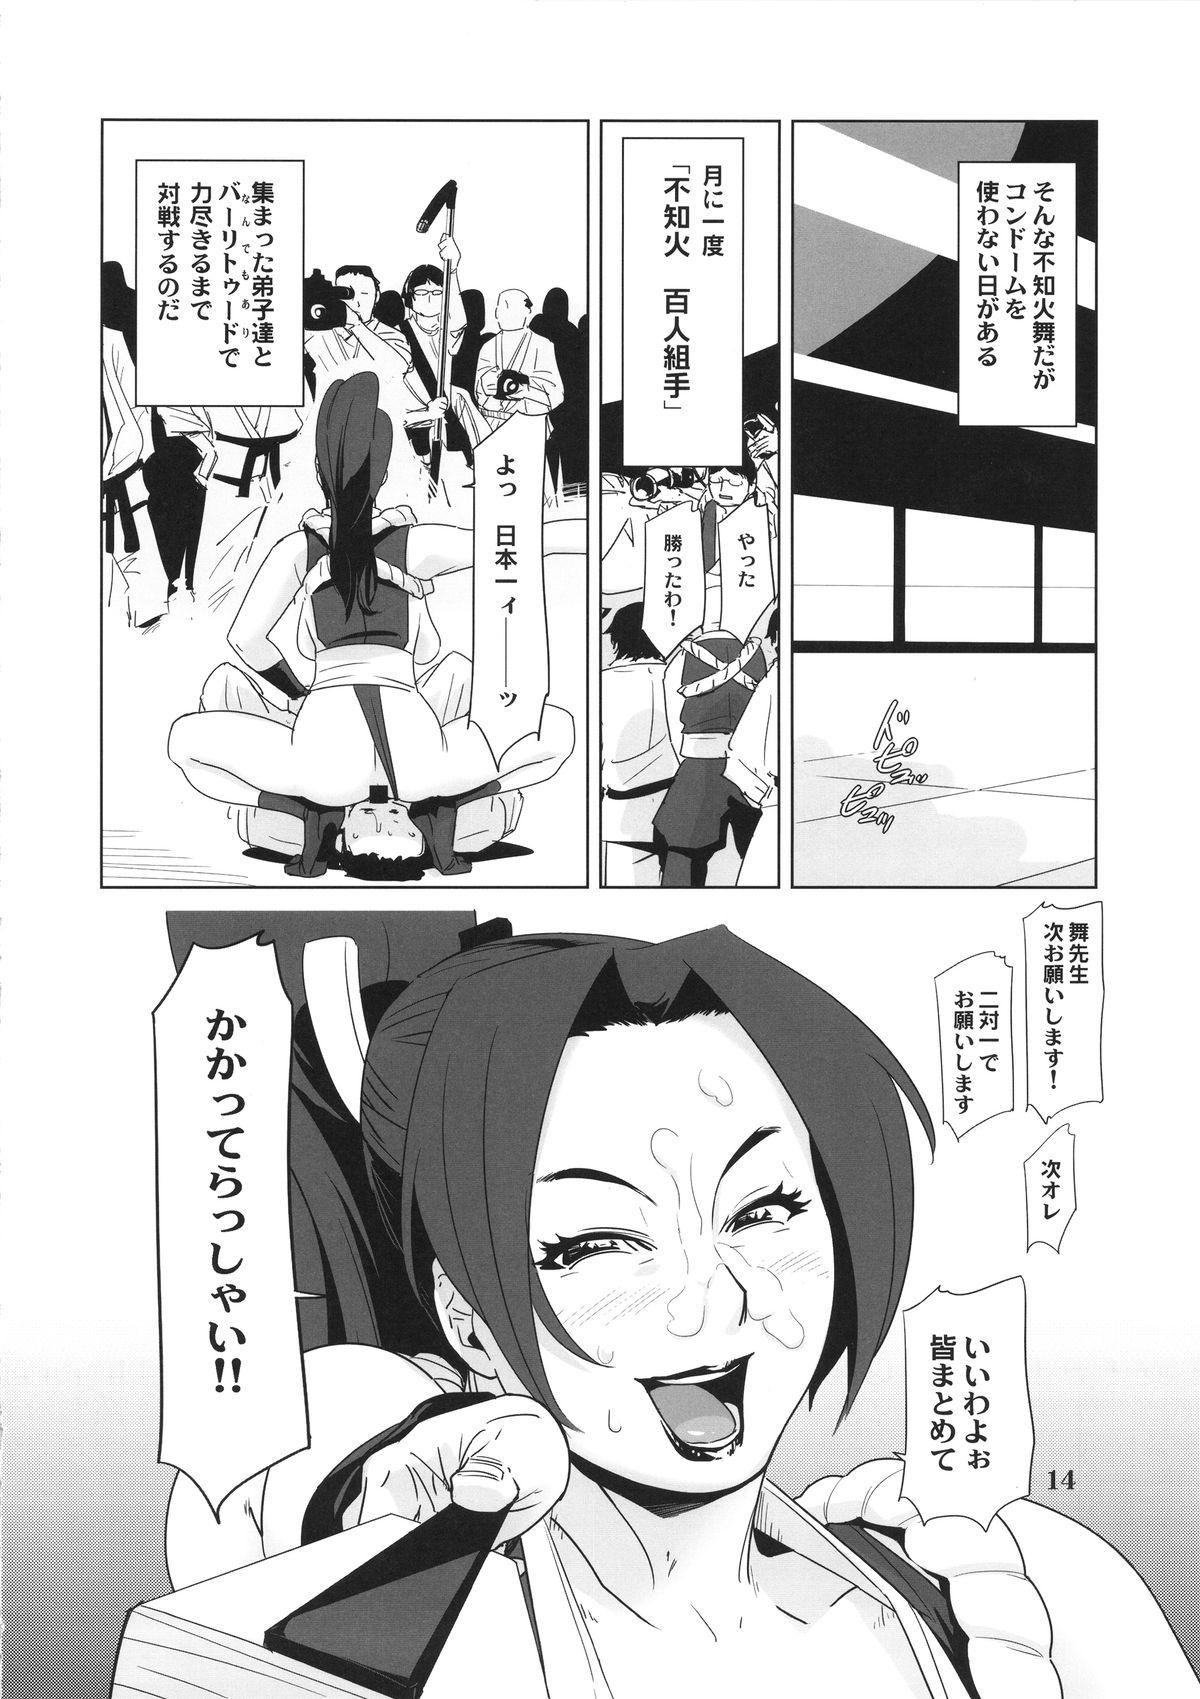 Hardcore Shiranui Mai Mitchaku 24-ji - King of fighters Celeb - Page 13